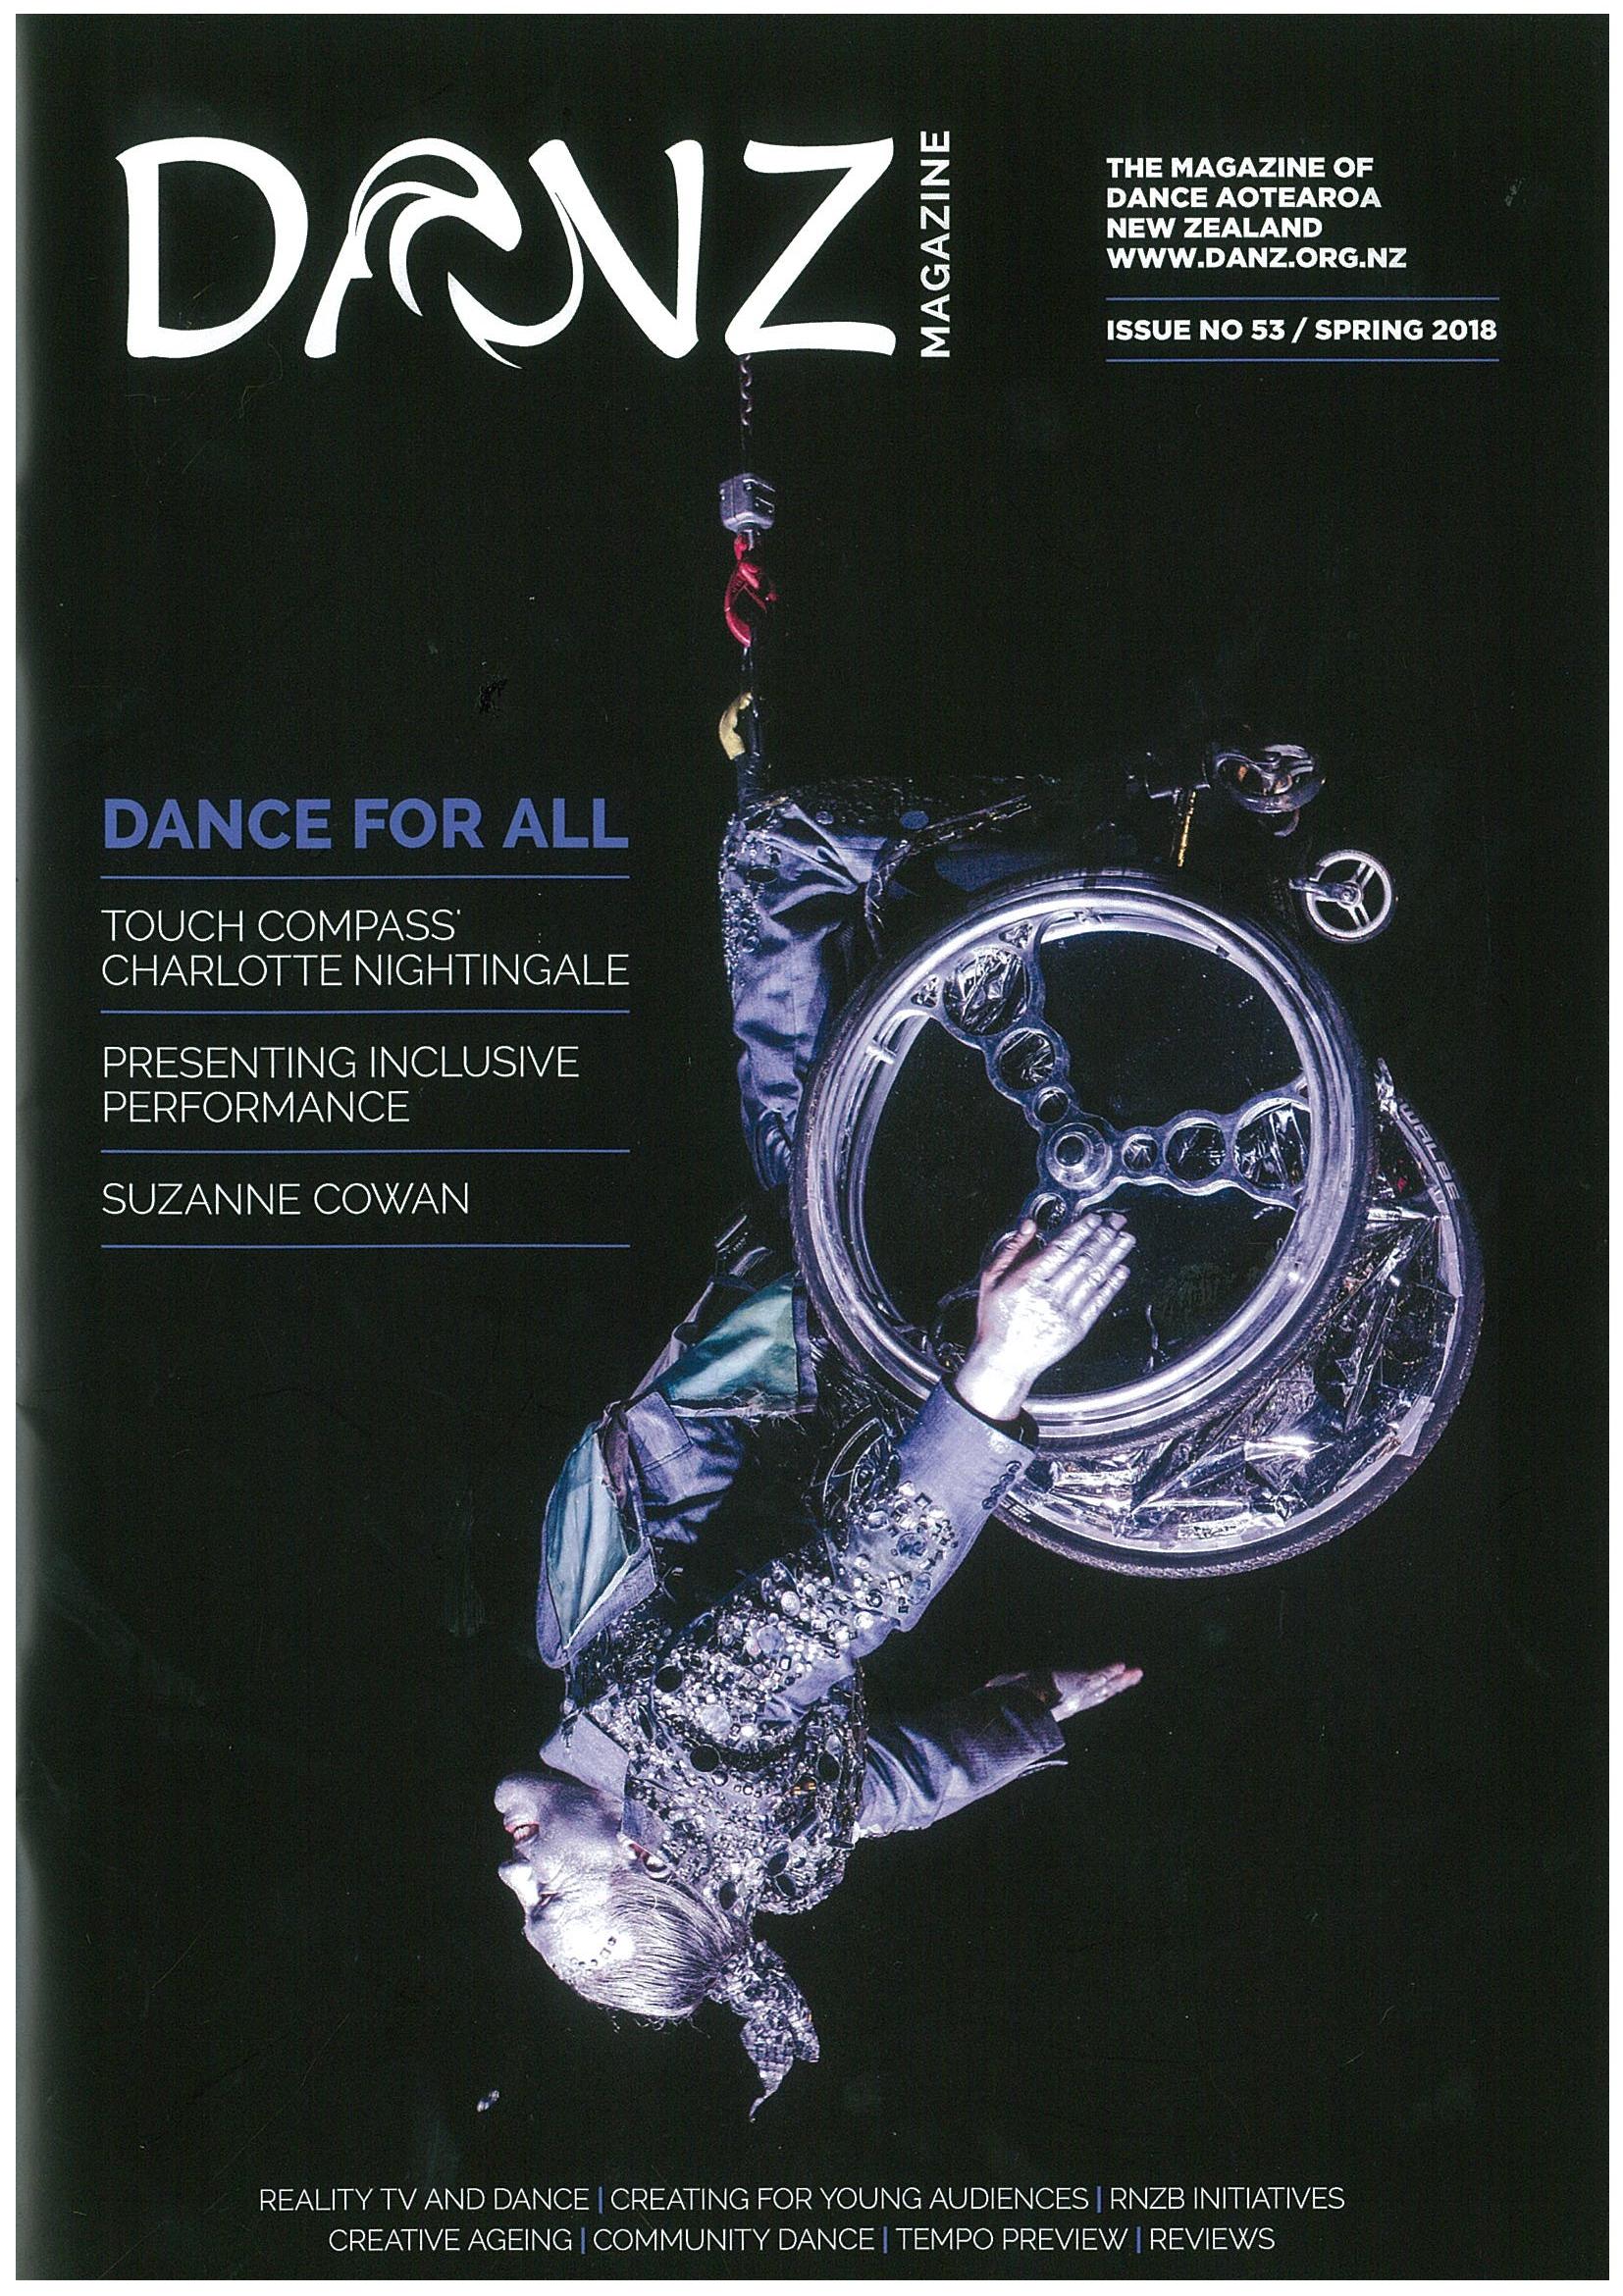 The cover of DANZ Magazine